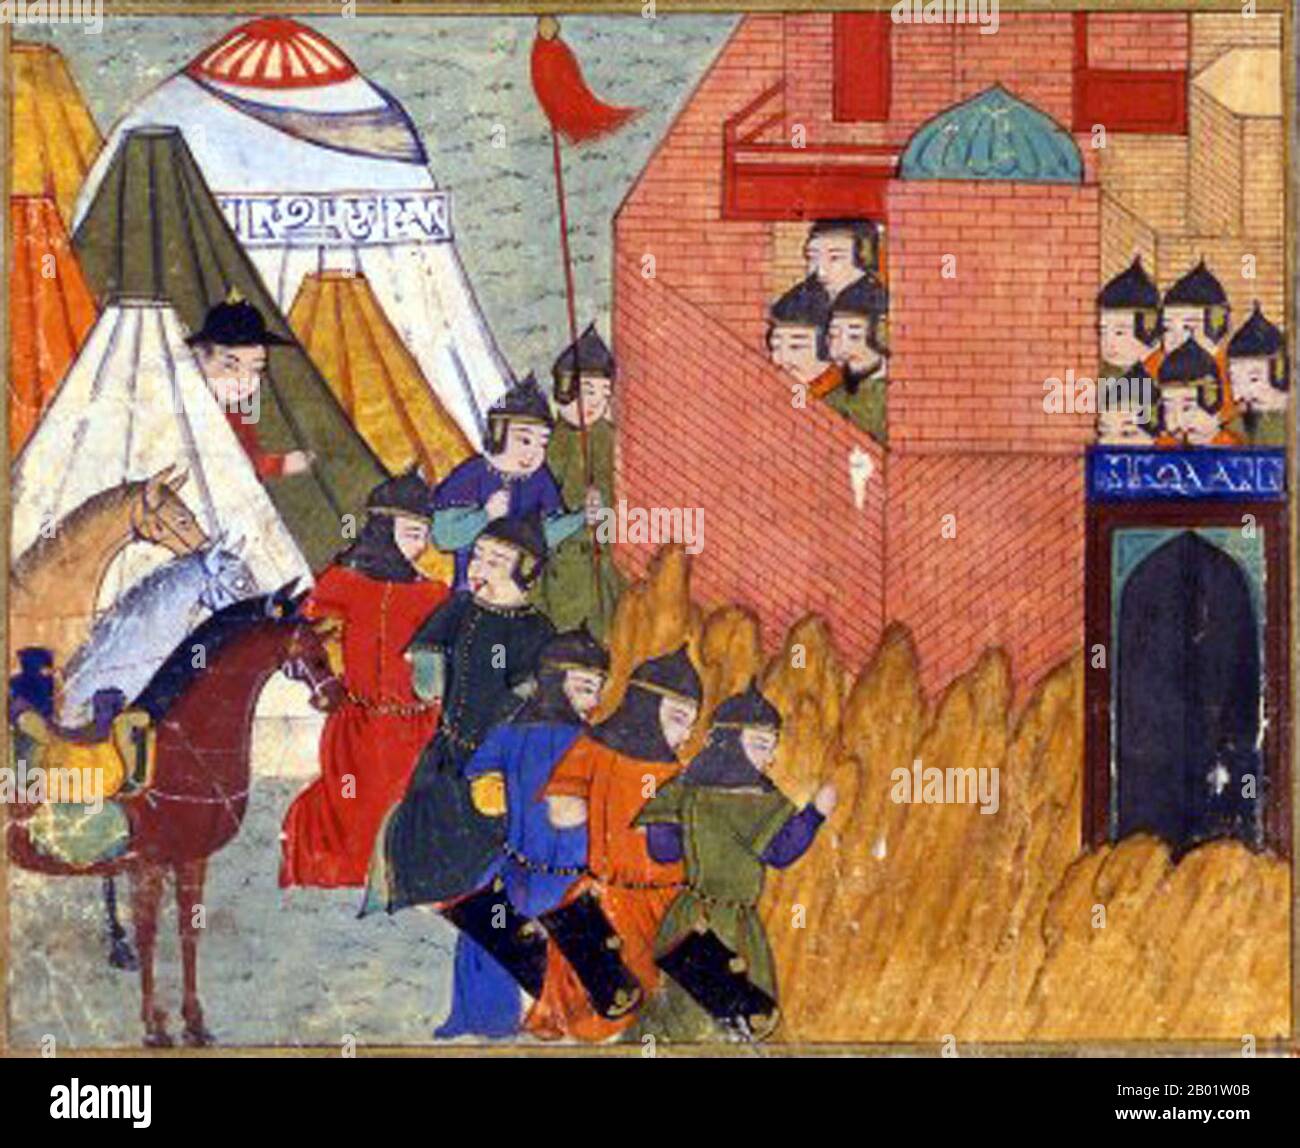 Iran/Persien/Mongolei: Belagerung von Erbil (1258-1259). Miniaturmalerei aus Rashid al-DIN (1247-1318) Jami al-Tawarikh, um 1305. Das Jāmiʿ al-tawārīkh („Kompendium der Chroniken“) ist ein iranisches Literatur- und Geschichtswerk, das Rashid al-DIN Hamadani zu Beginn des 14. Jahrhunderts geschrieben hat. Stockfoto